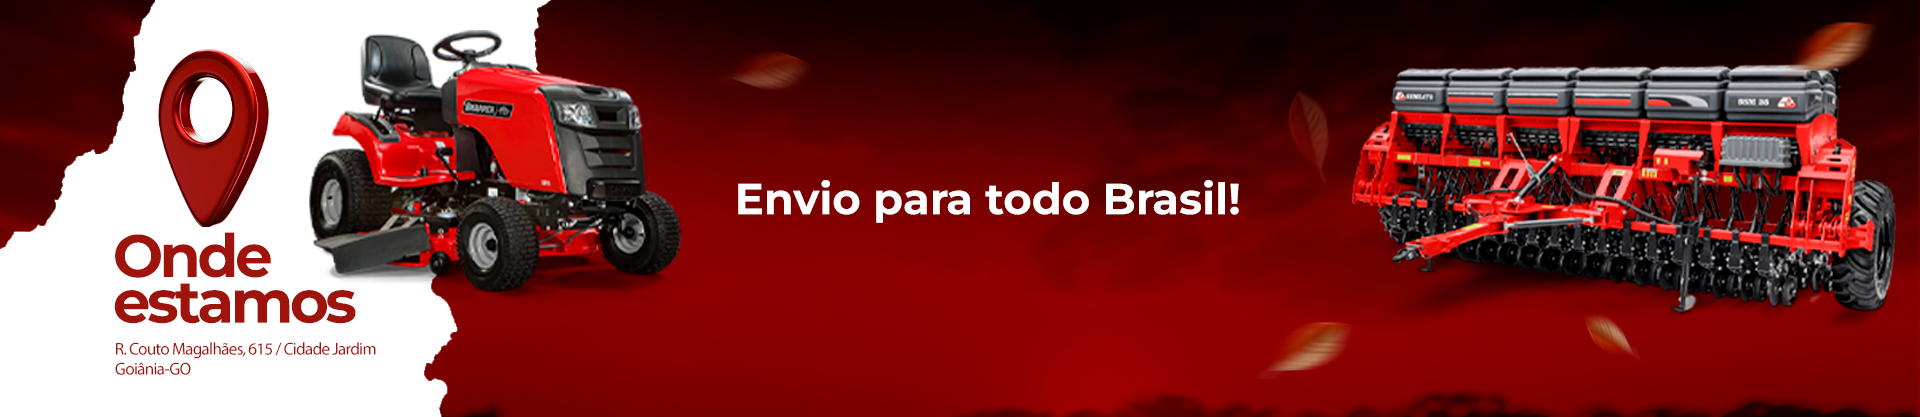 Banner Principal - Envio para tado brasil